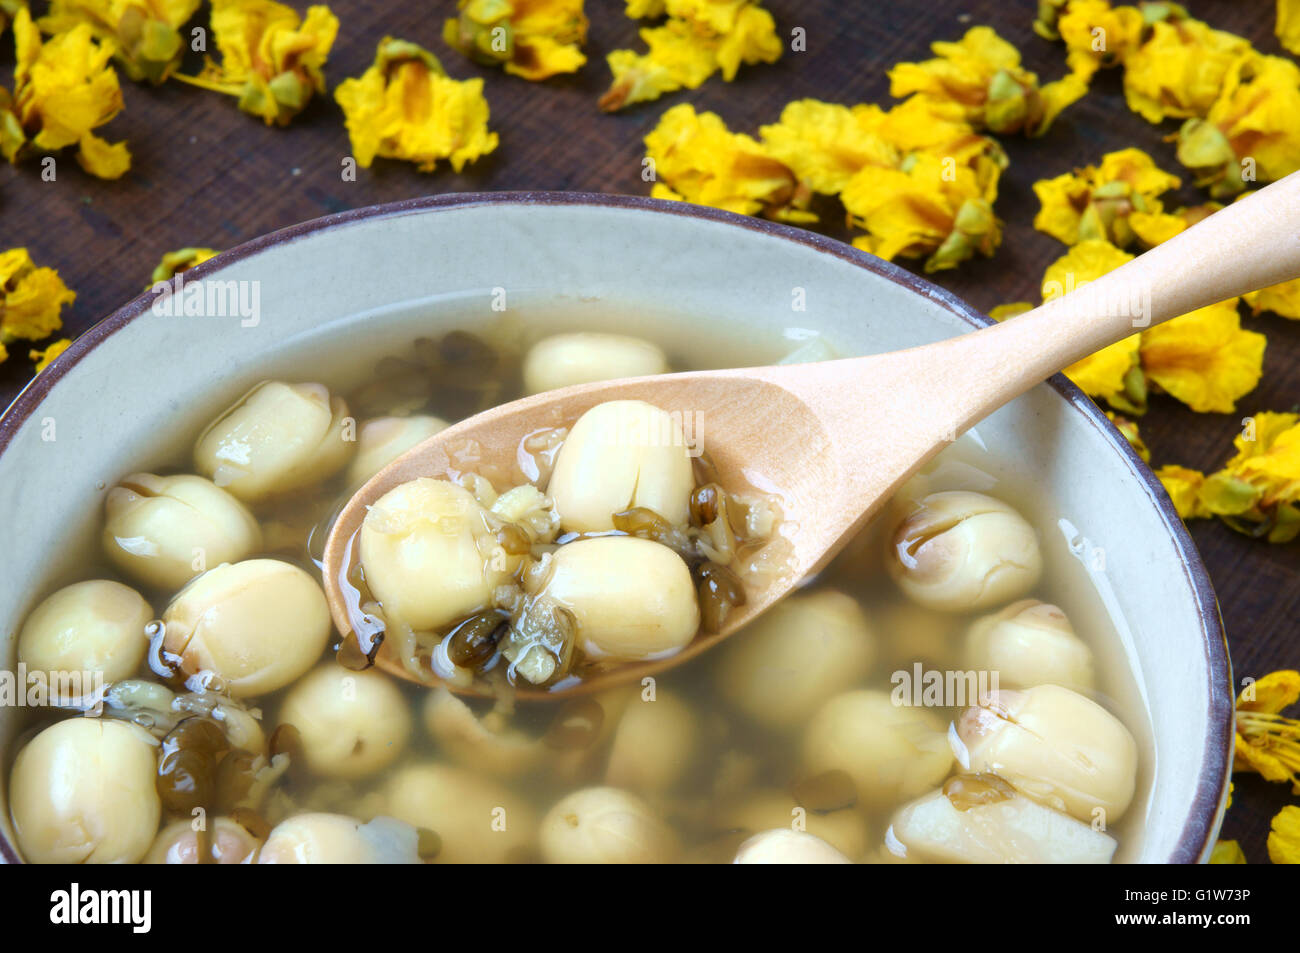 Vietnam, les patates bouillies de graines de lotus, lotus Ingrédients : Haricots, les haricots mungo, la châtaigne d'eau et le sucre candy. Vietnam dessert Banque D'Images